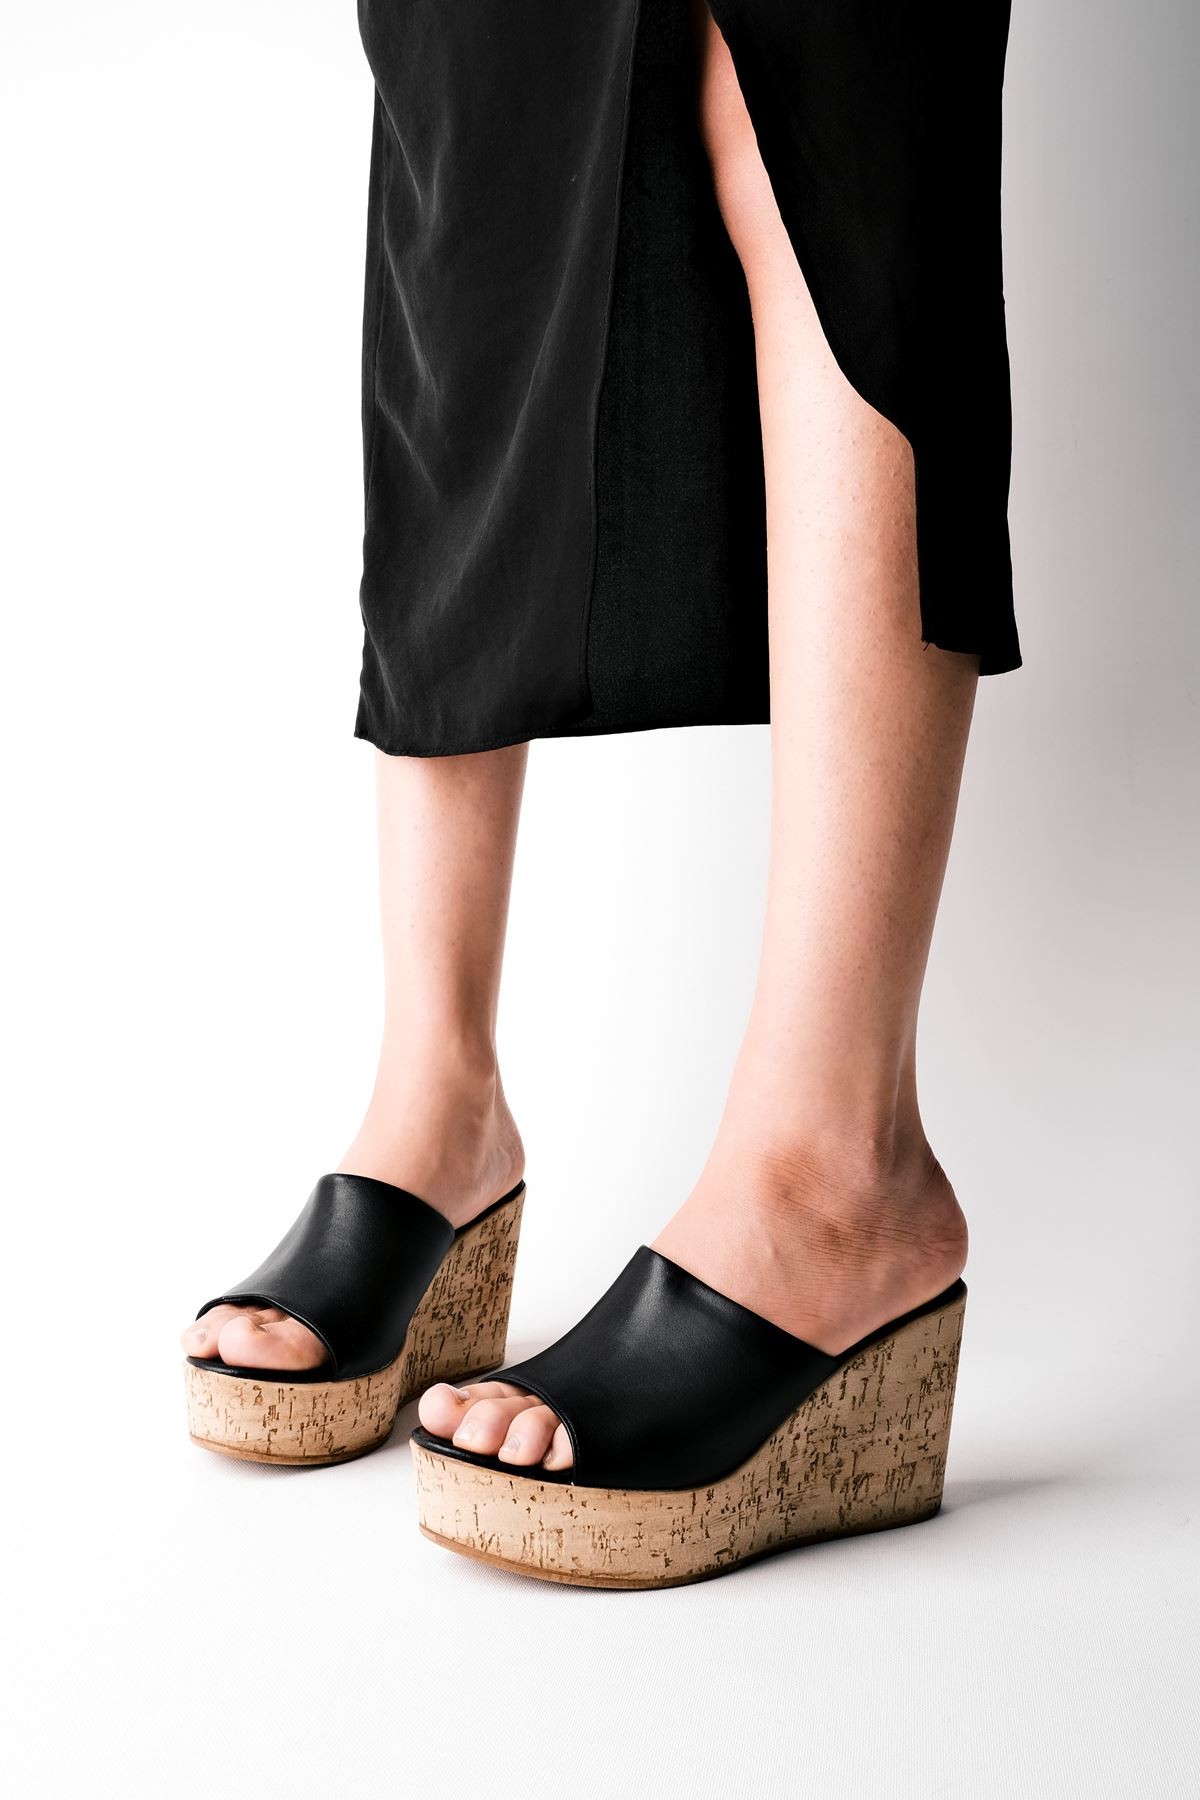 Becy Kadın Mantar Taban Görünümlü Dolgu Topuklu Terlik B3244 - Siyah